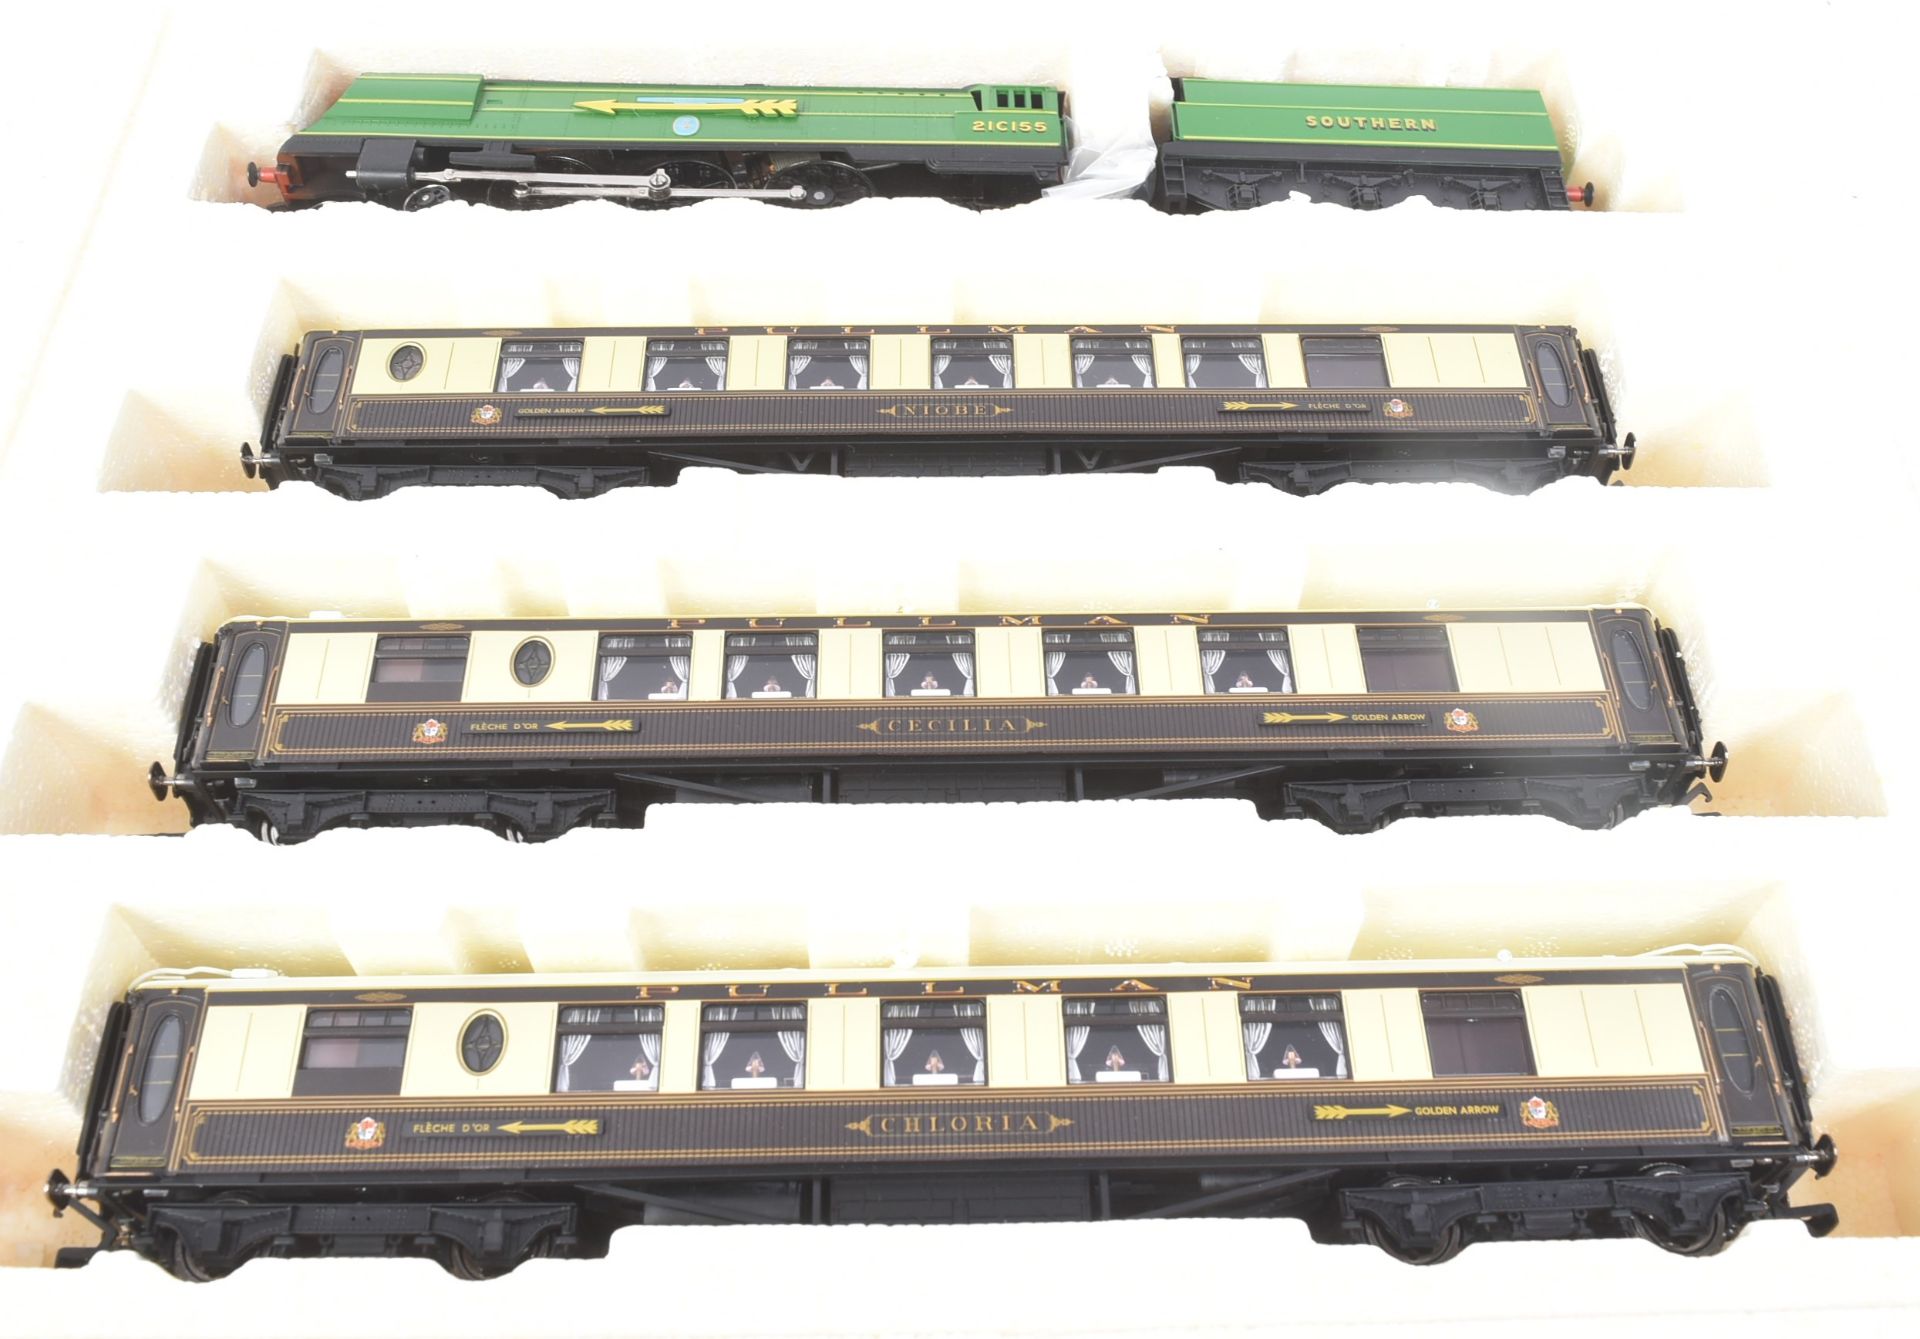 MODEL RAILWAY - HORNBY OO GAUGE GOLDEN ARROW LOCOMOTIVE TRAIN SET - Image 5 of 5